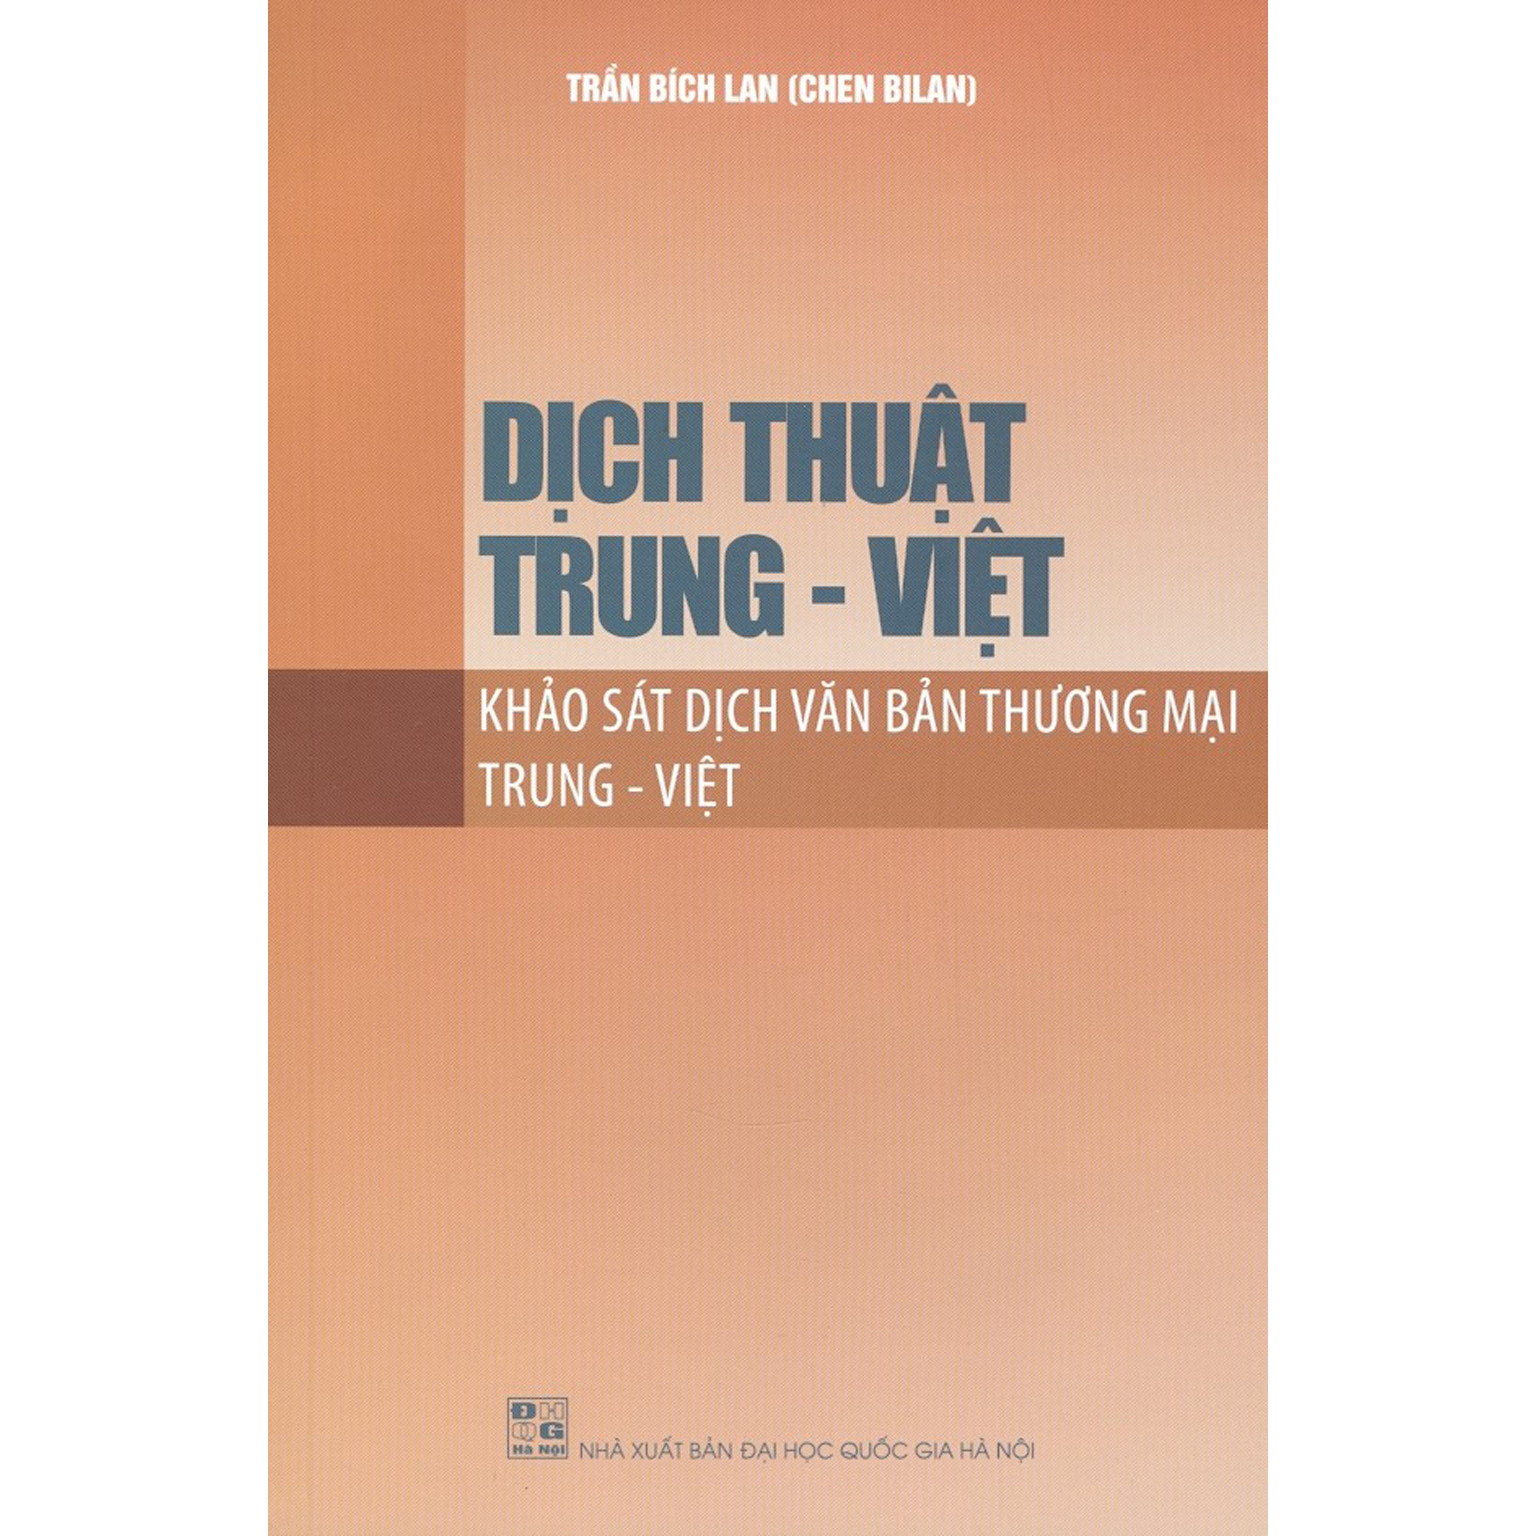 Dịch Thuật Trung - Việt: Khảo Sát Dịch Văn Bản Thương Mại Trung - Việt